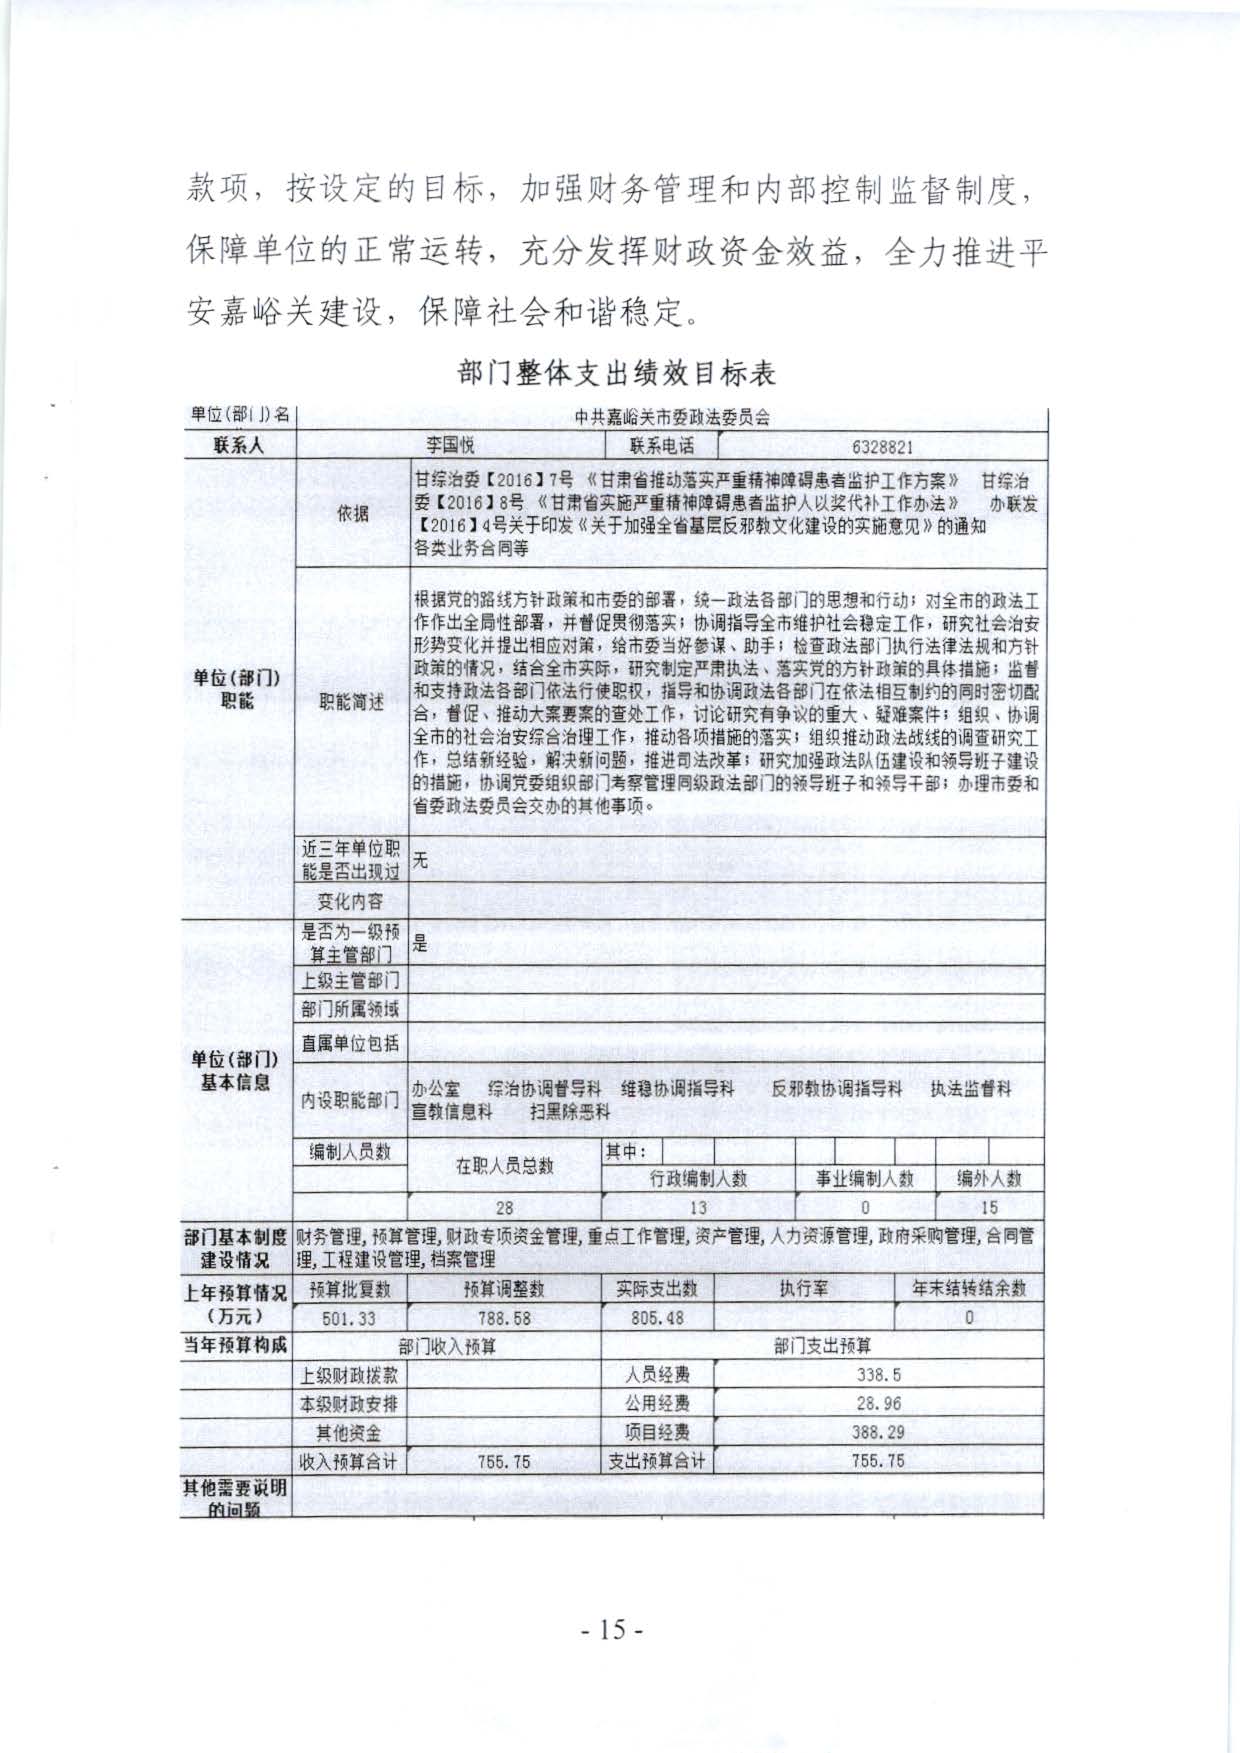 嘉峪关市委政法委2023年预算公开情况说明(1)_页面_15